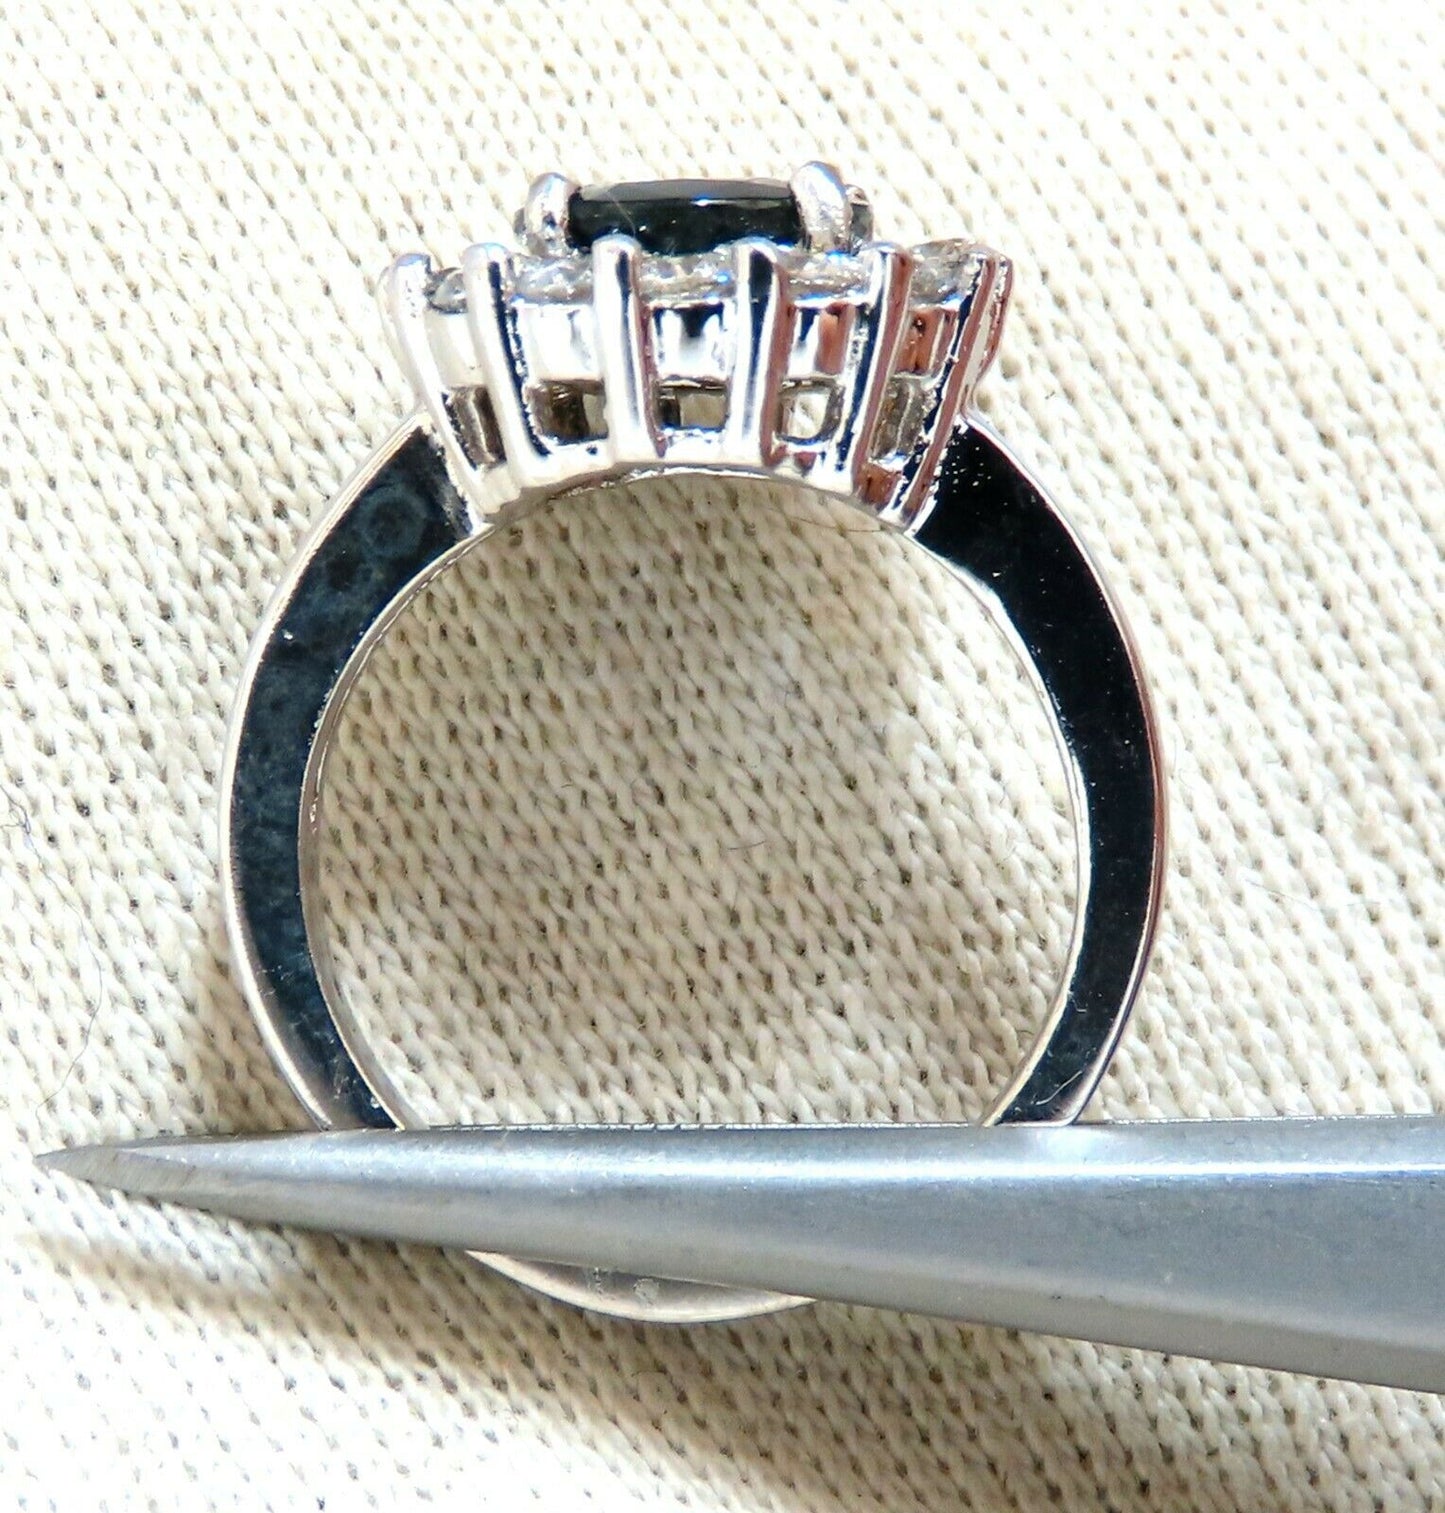 GIA Certified 2.54ct Natural Teal Blue Sapphire Diamond Ring 14 Karat